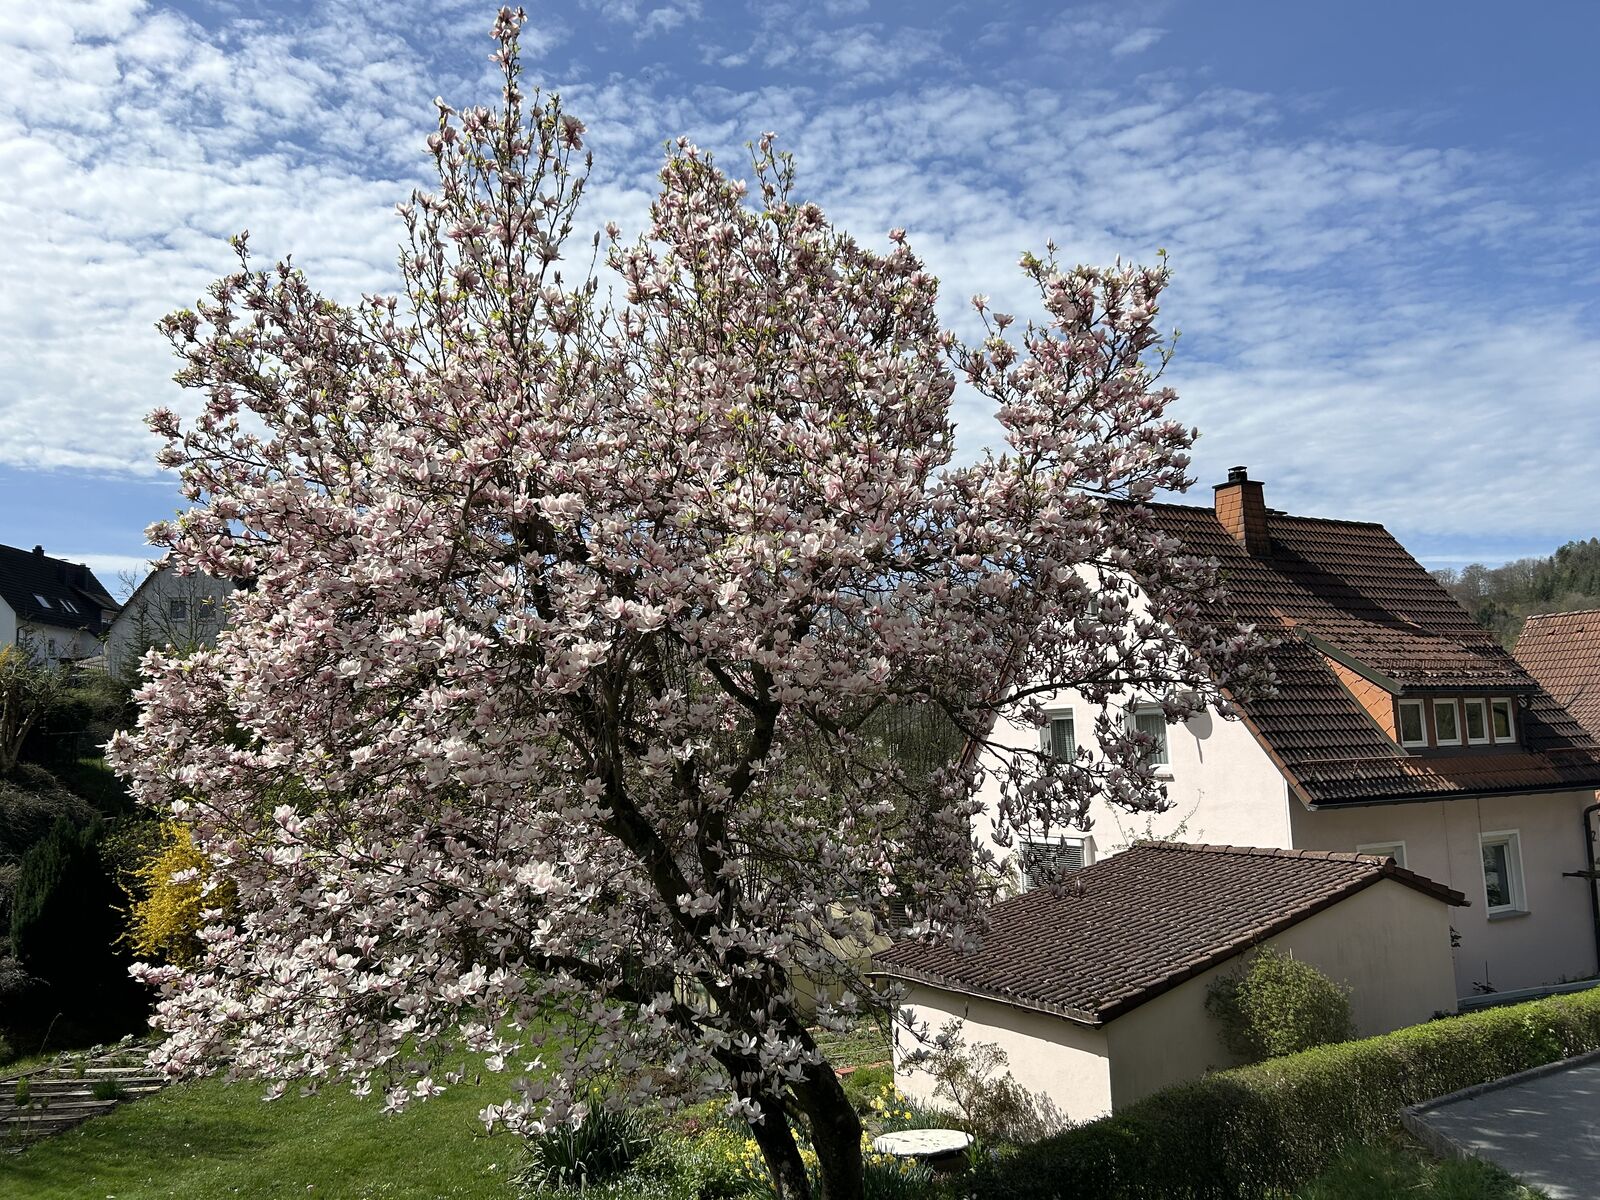 Magnolienbaum in Blüte